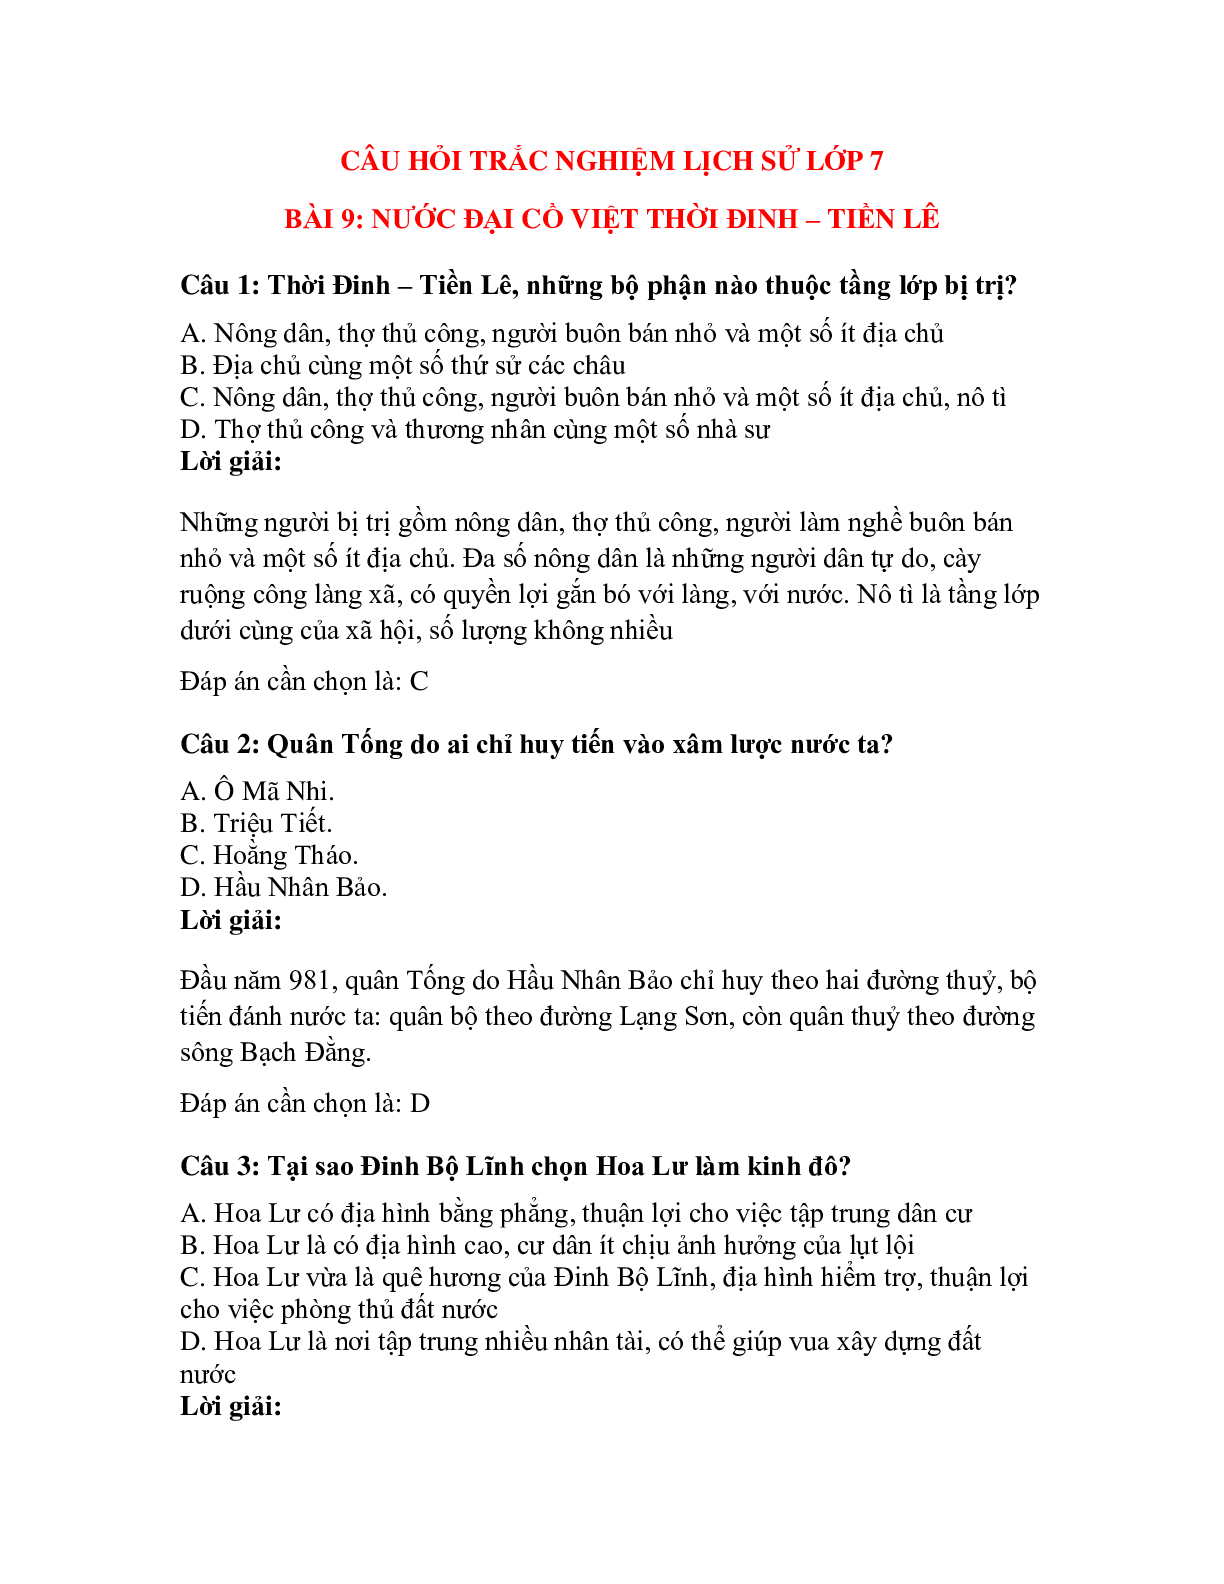 Trắc nghiệm Lịch sử 7 Bài 9 có đáp án: Nước Đại Cồ Việt thời Đinh - Tiền Lê (trang 1)